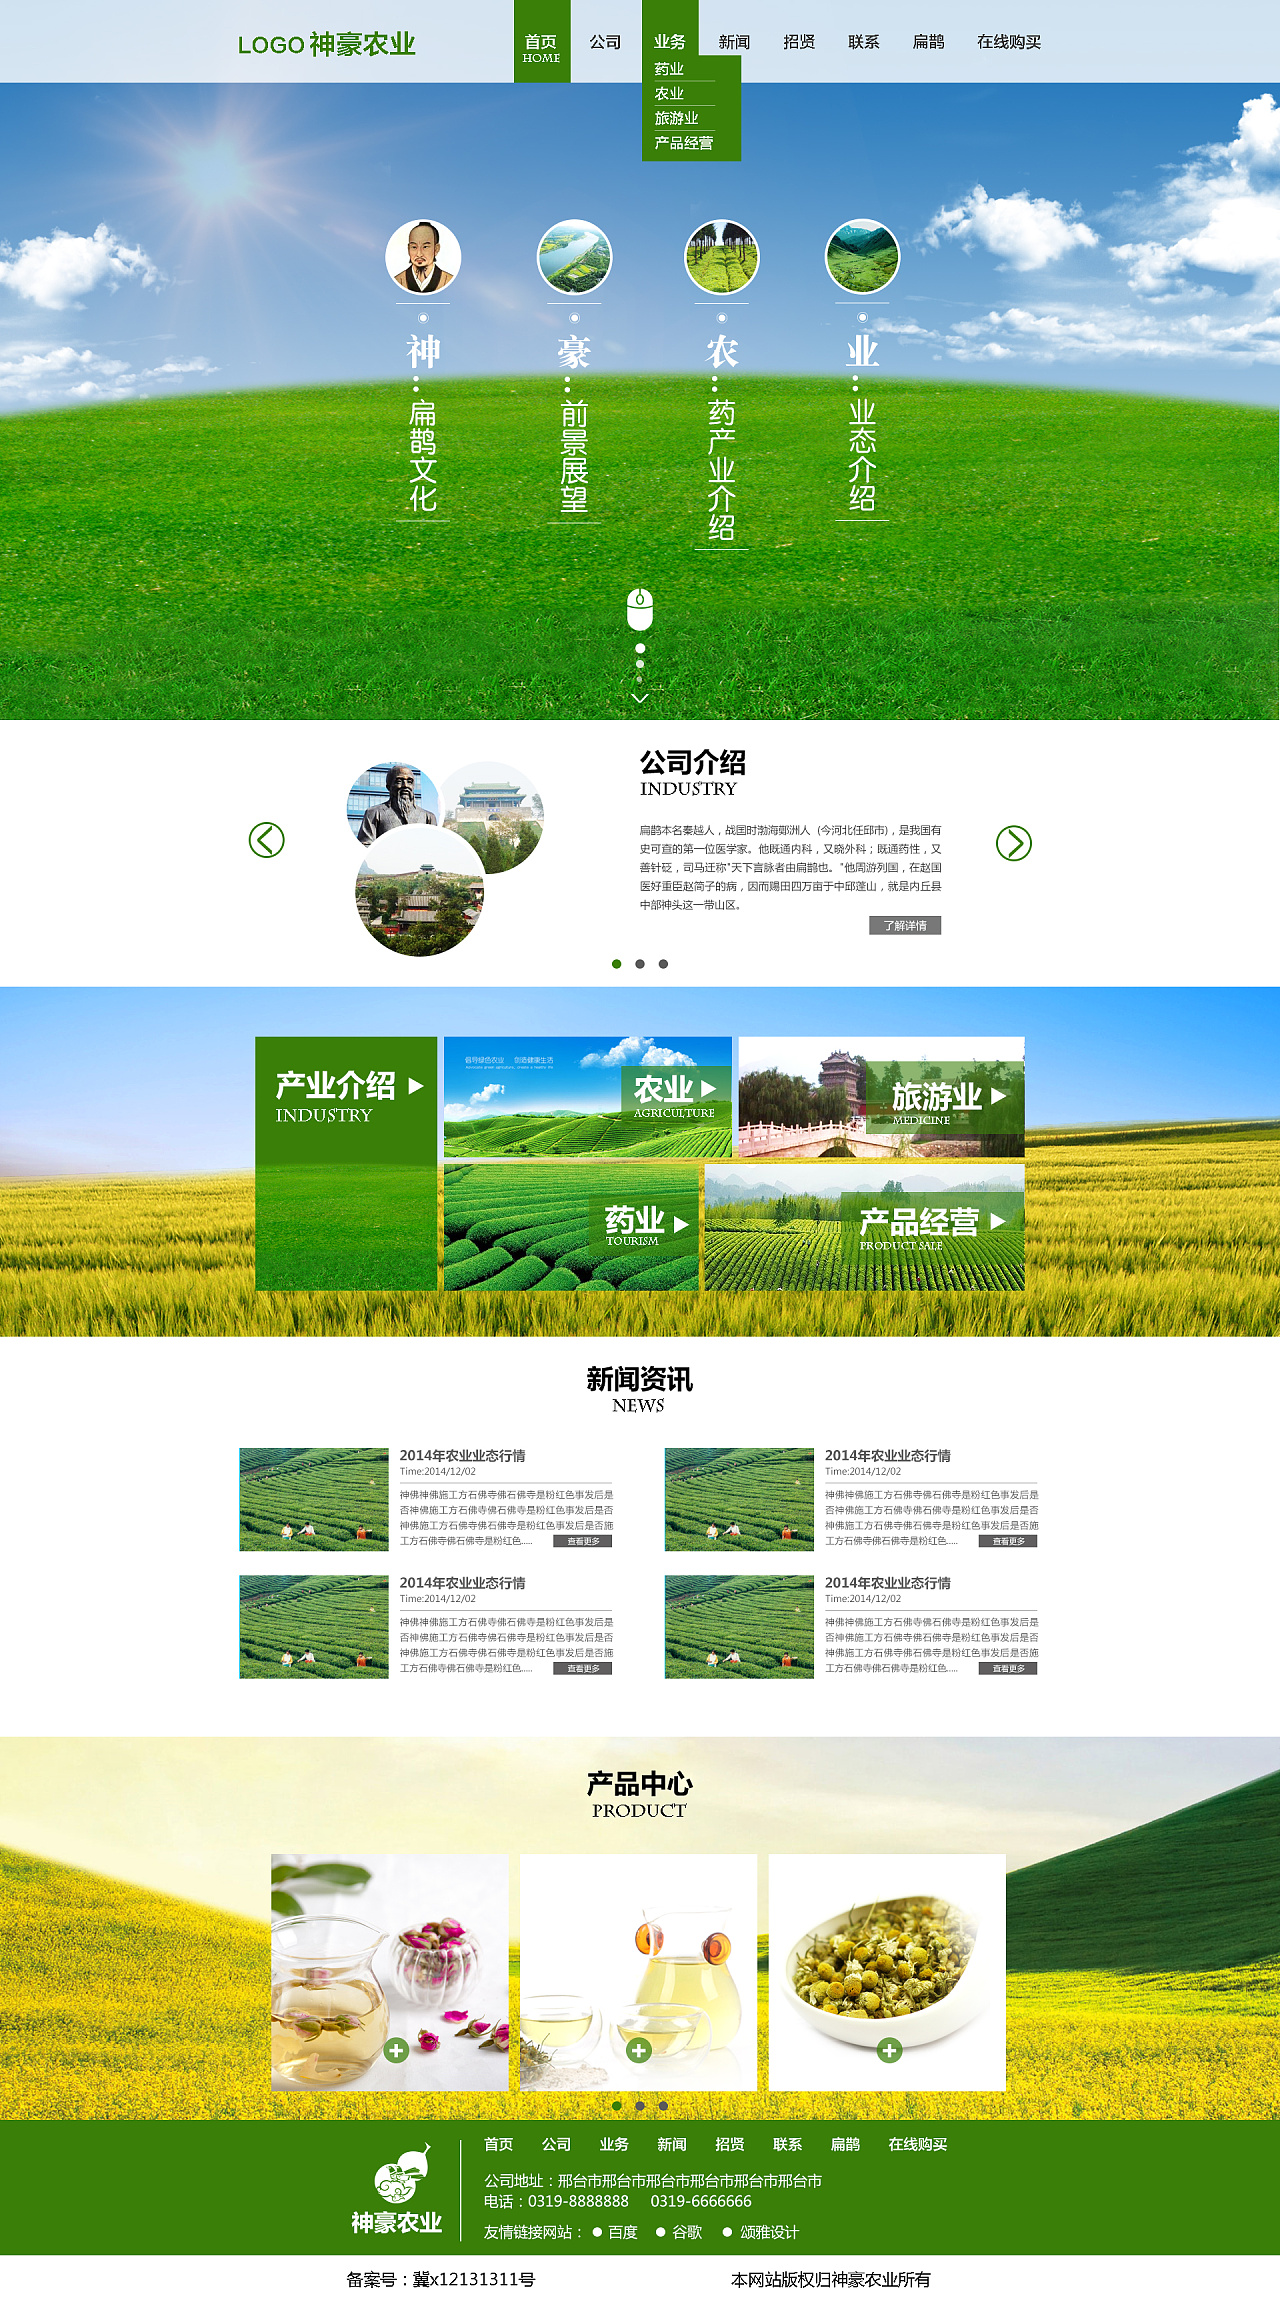 神豪农业的网站设计,